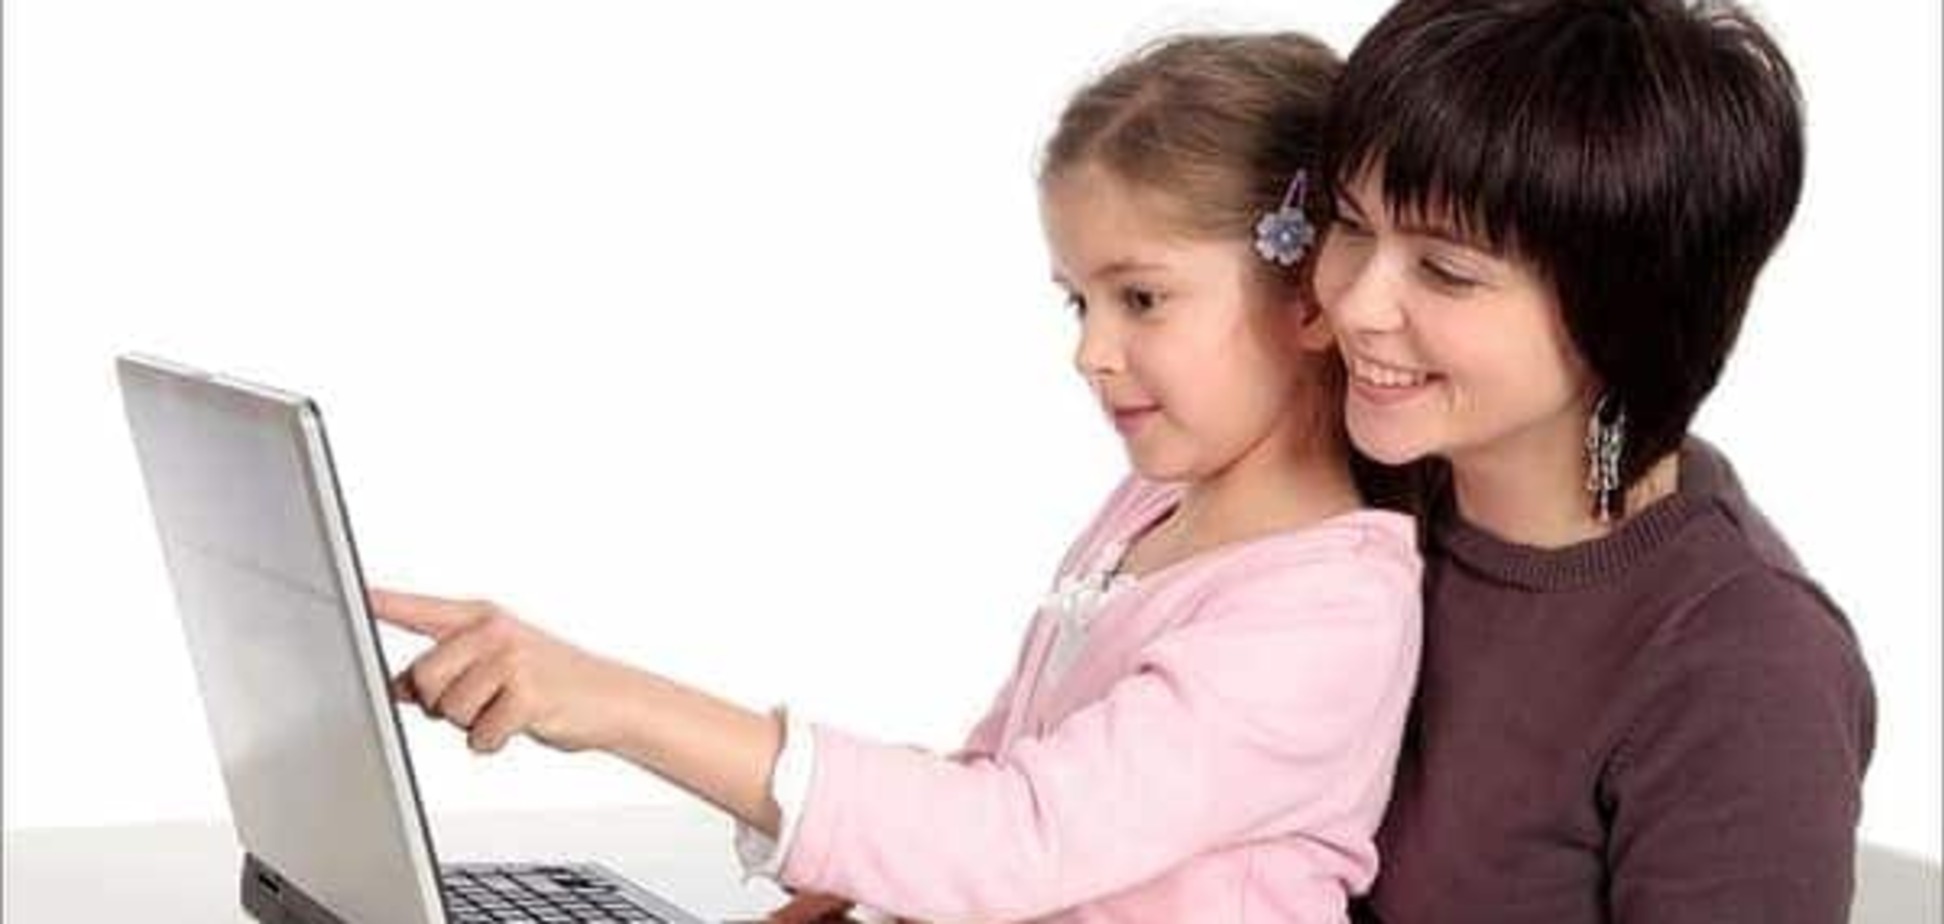 Как уберечь ребенка от влияния сети интернет: несколько советов родителям